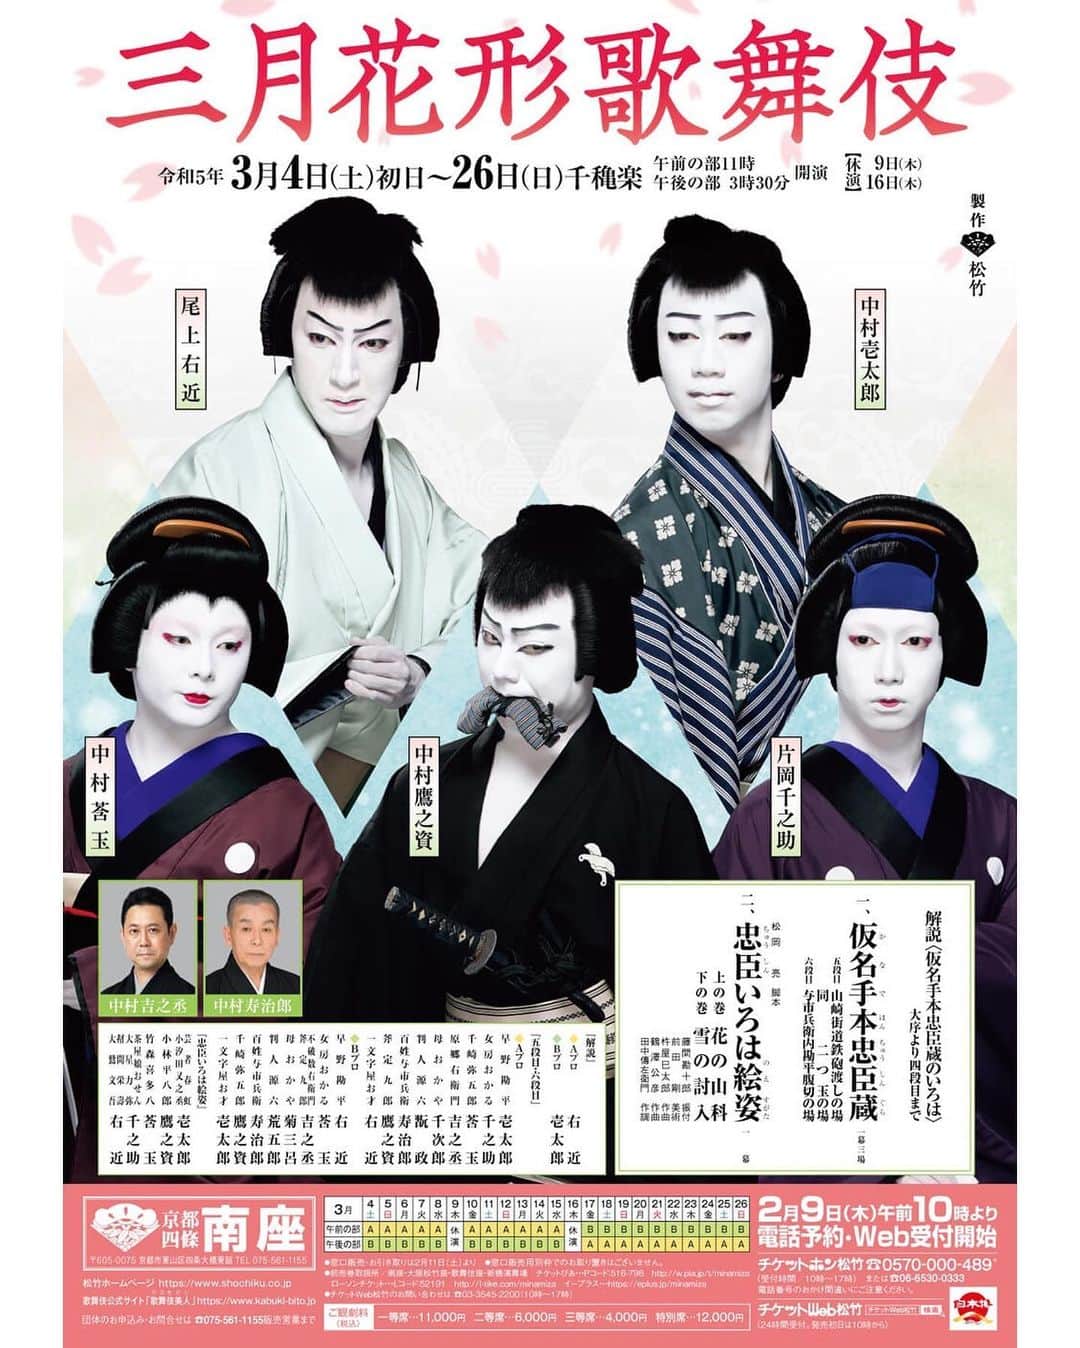 中村莟玉のインスタグラム：「・  3月は京都南座・三月花形歌舞伎に出演いたします。 3年連続となる、3月の南座での若手歌舞伎公演。初参加させていただきます。  江戸の型の「六段目」のお軽と上方の型の「五段目・六段目」の千崎弥五郎、そして「忠臣いろはの絵姿」では「仮名手本忠臣蔵」の通し上演の際には「十一段目」に登場する、竹森喜多八をさせていただきます。  盛りだくさんのひと月。 1年目、2年目に参加された先輩たちからのバトンをしっかりと引き継いで、みんなで力を合わせて頑張ります！ 歌舞伎、そして「忠臣蔵」というもの自体がちょっと馴染みないな、わからないな、と思われる方にも楽しんでいただけるプログラムとなっております！ どうか安心して劇場にお越しください！ 春爛漫の京都でお待ちしております！！！  #京都 #南座 #京都南座 #三月花形歌舞伎 #忠臣蔵 #仮名手本忠臣蔵 #忠臣いろは絵姿  #中村壱太郎 #尾上右近 #中村鷹之資 #片岡千之助 #中村莟玉  敬称略」